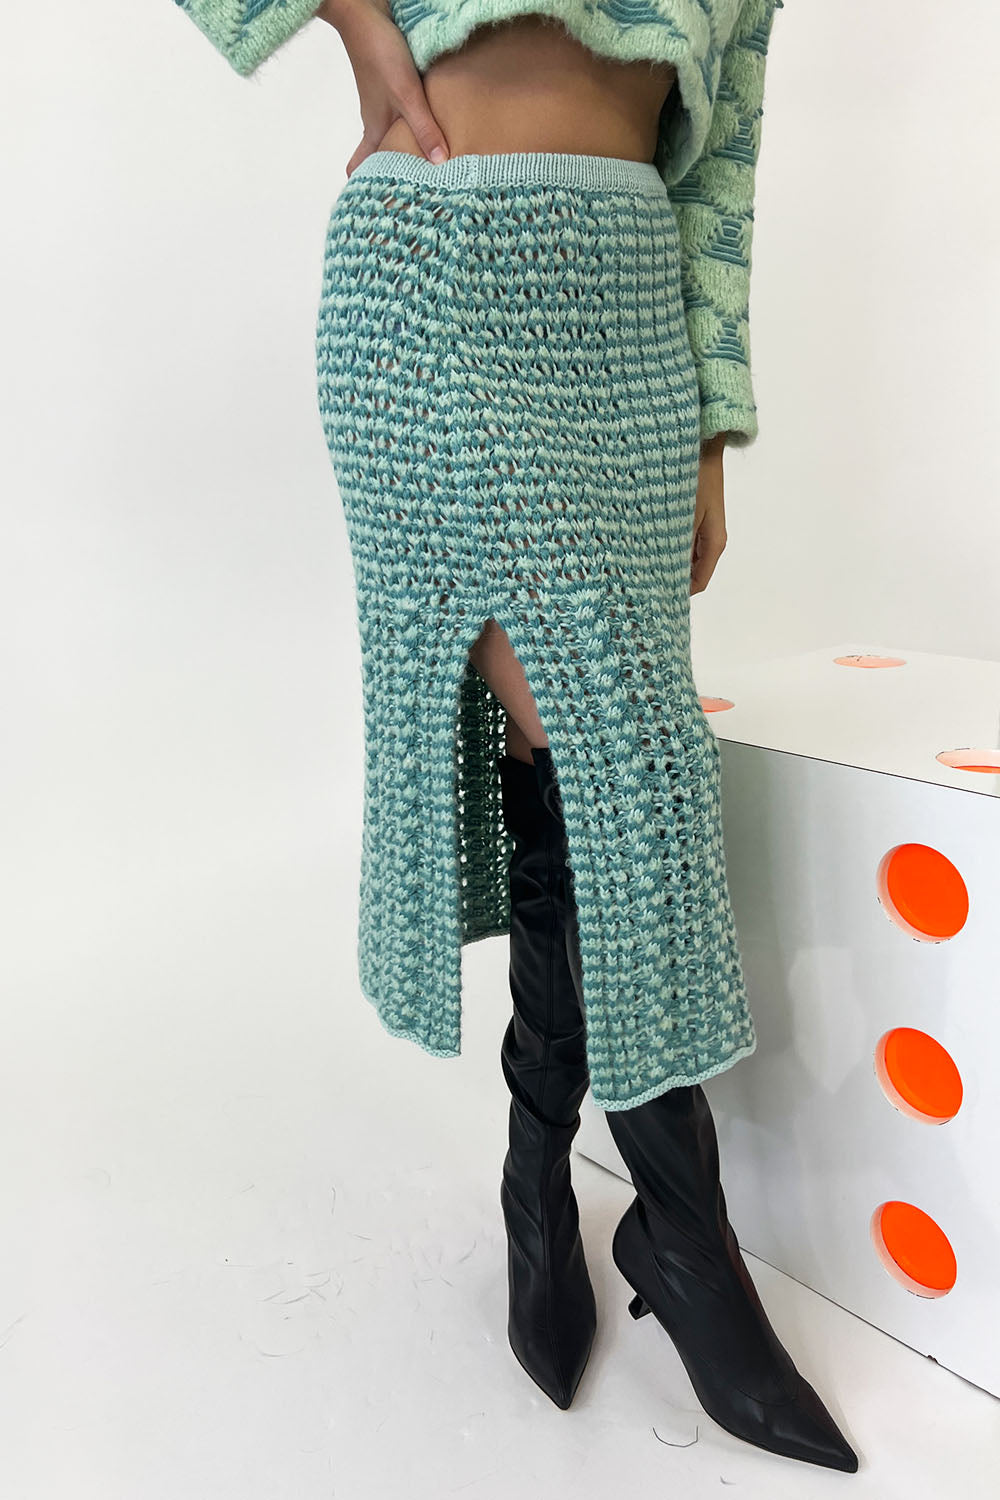 Marco Rambaldi - Braided Knitted Skirt: Green